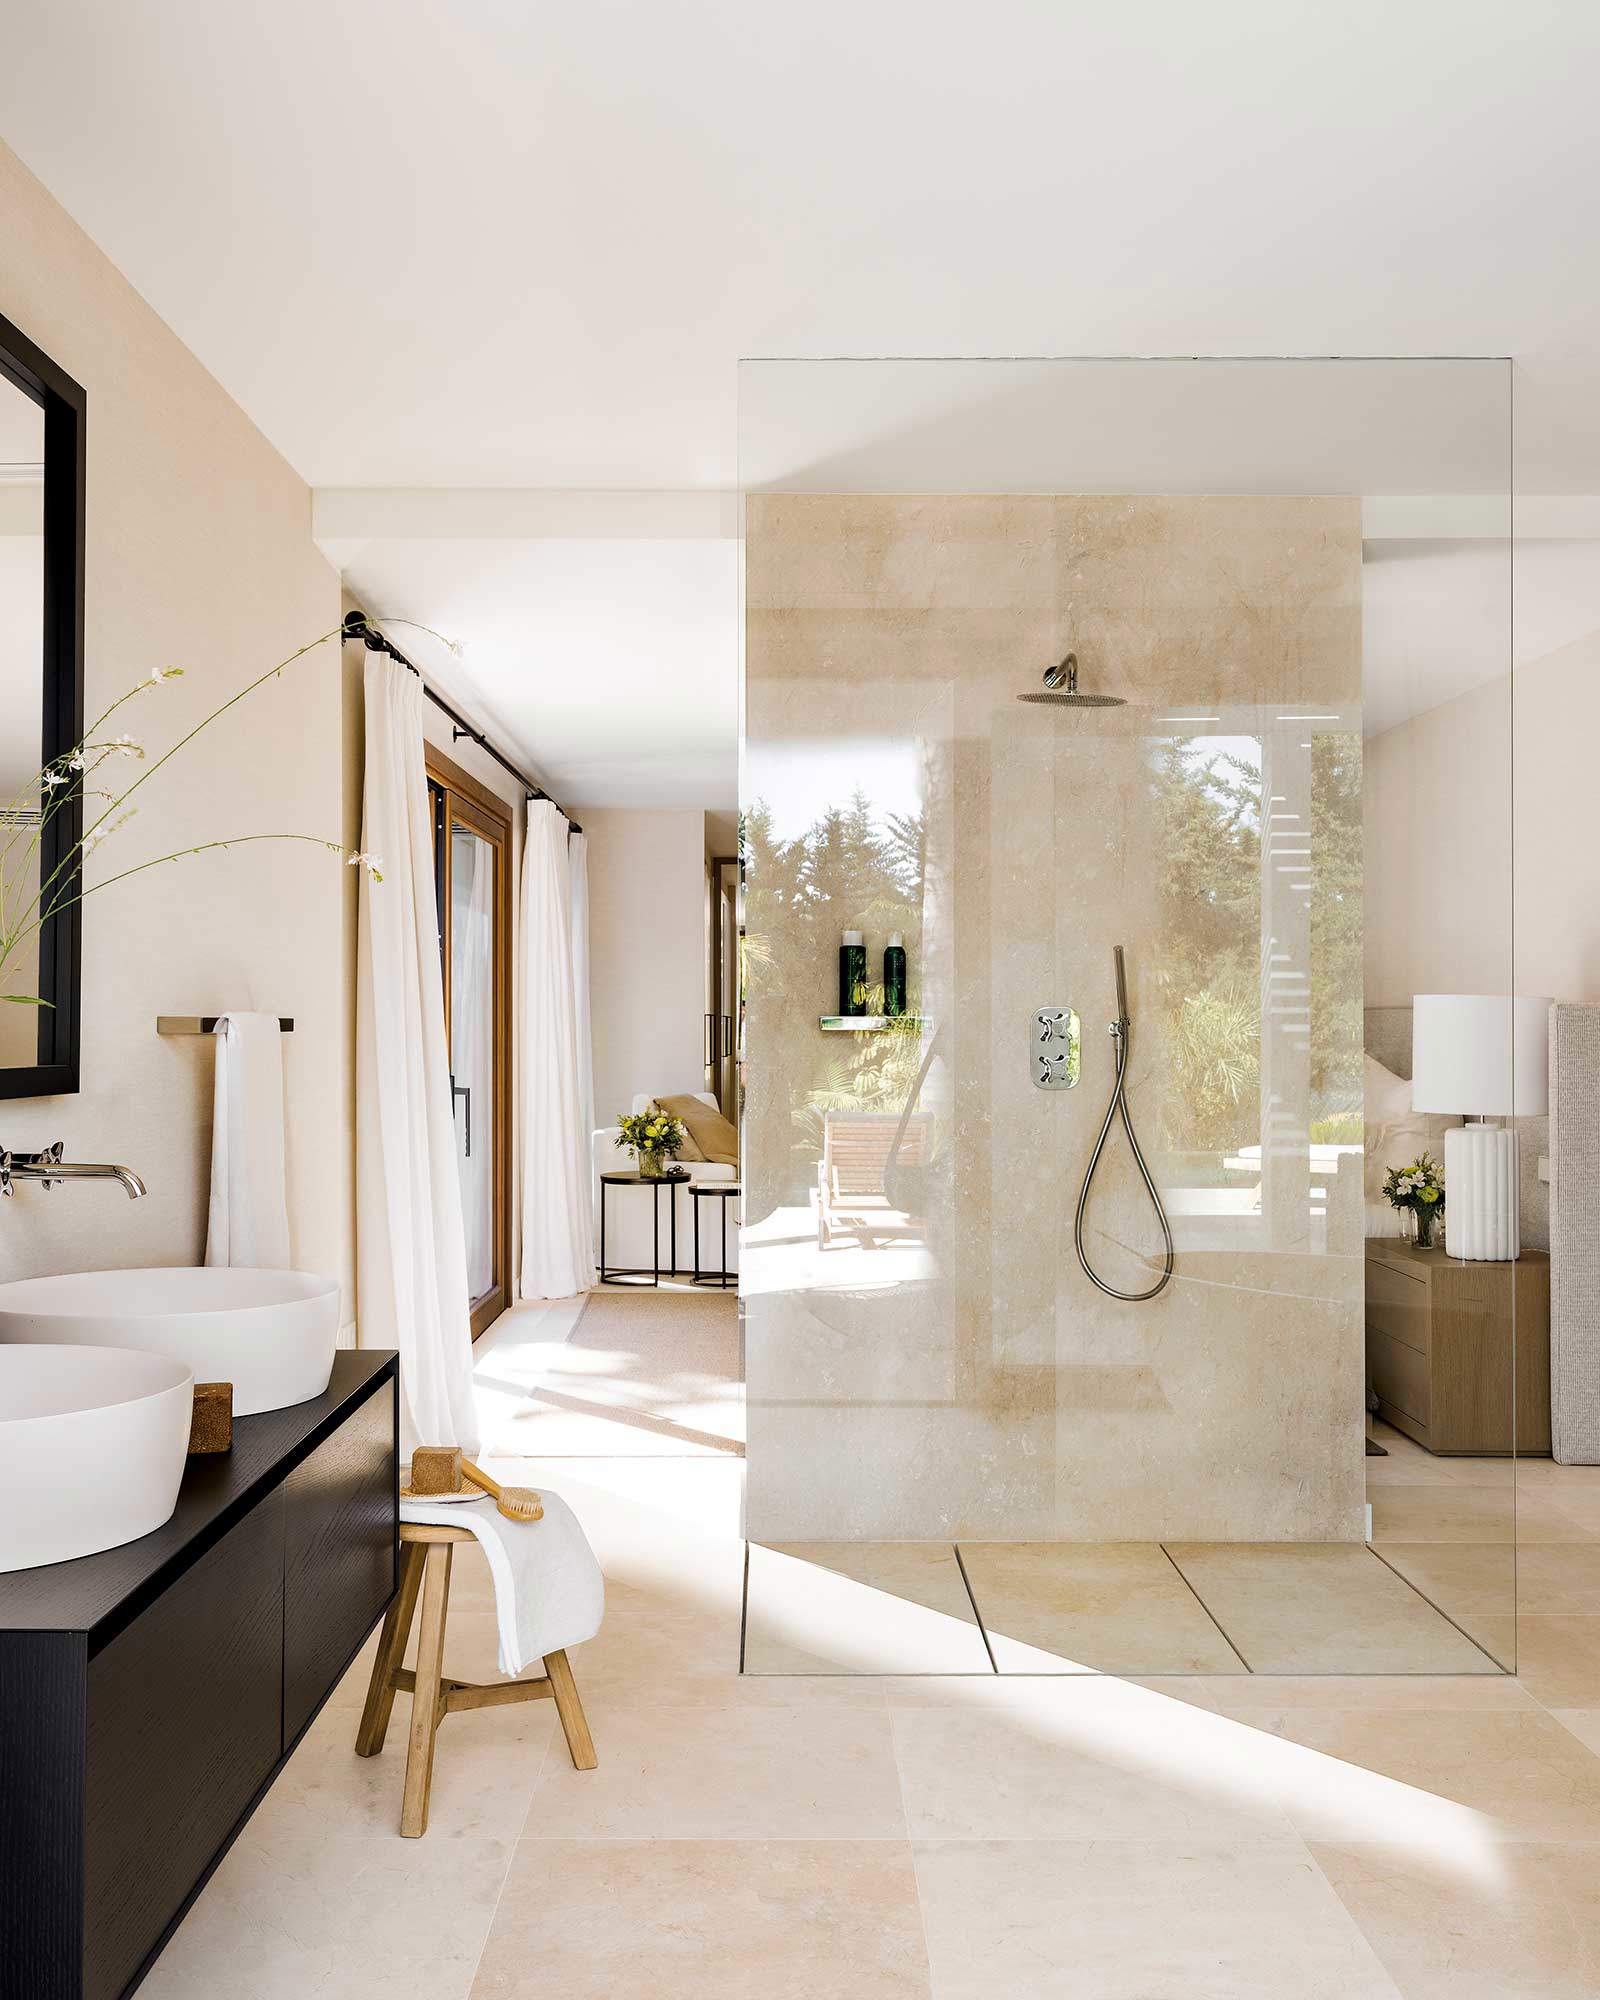 Baño moderno con gran ducha que separa ambientes.